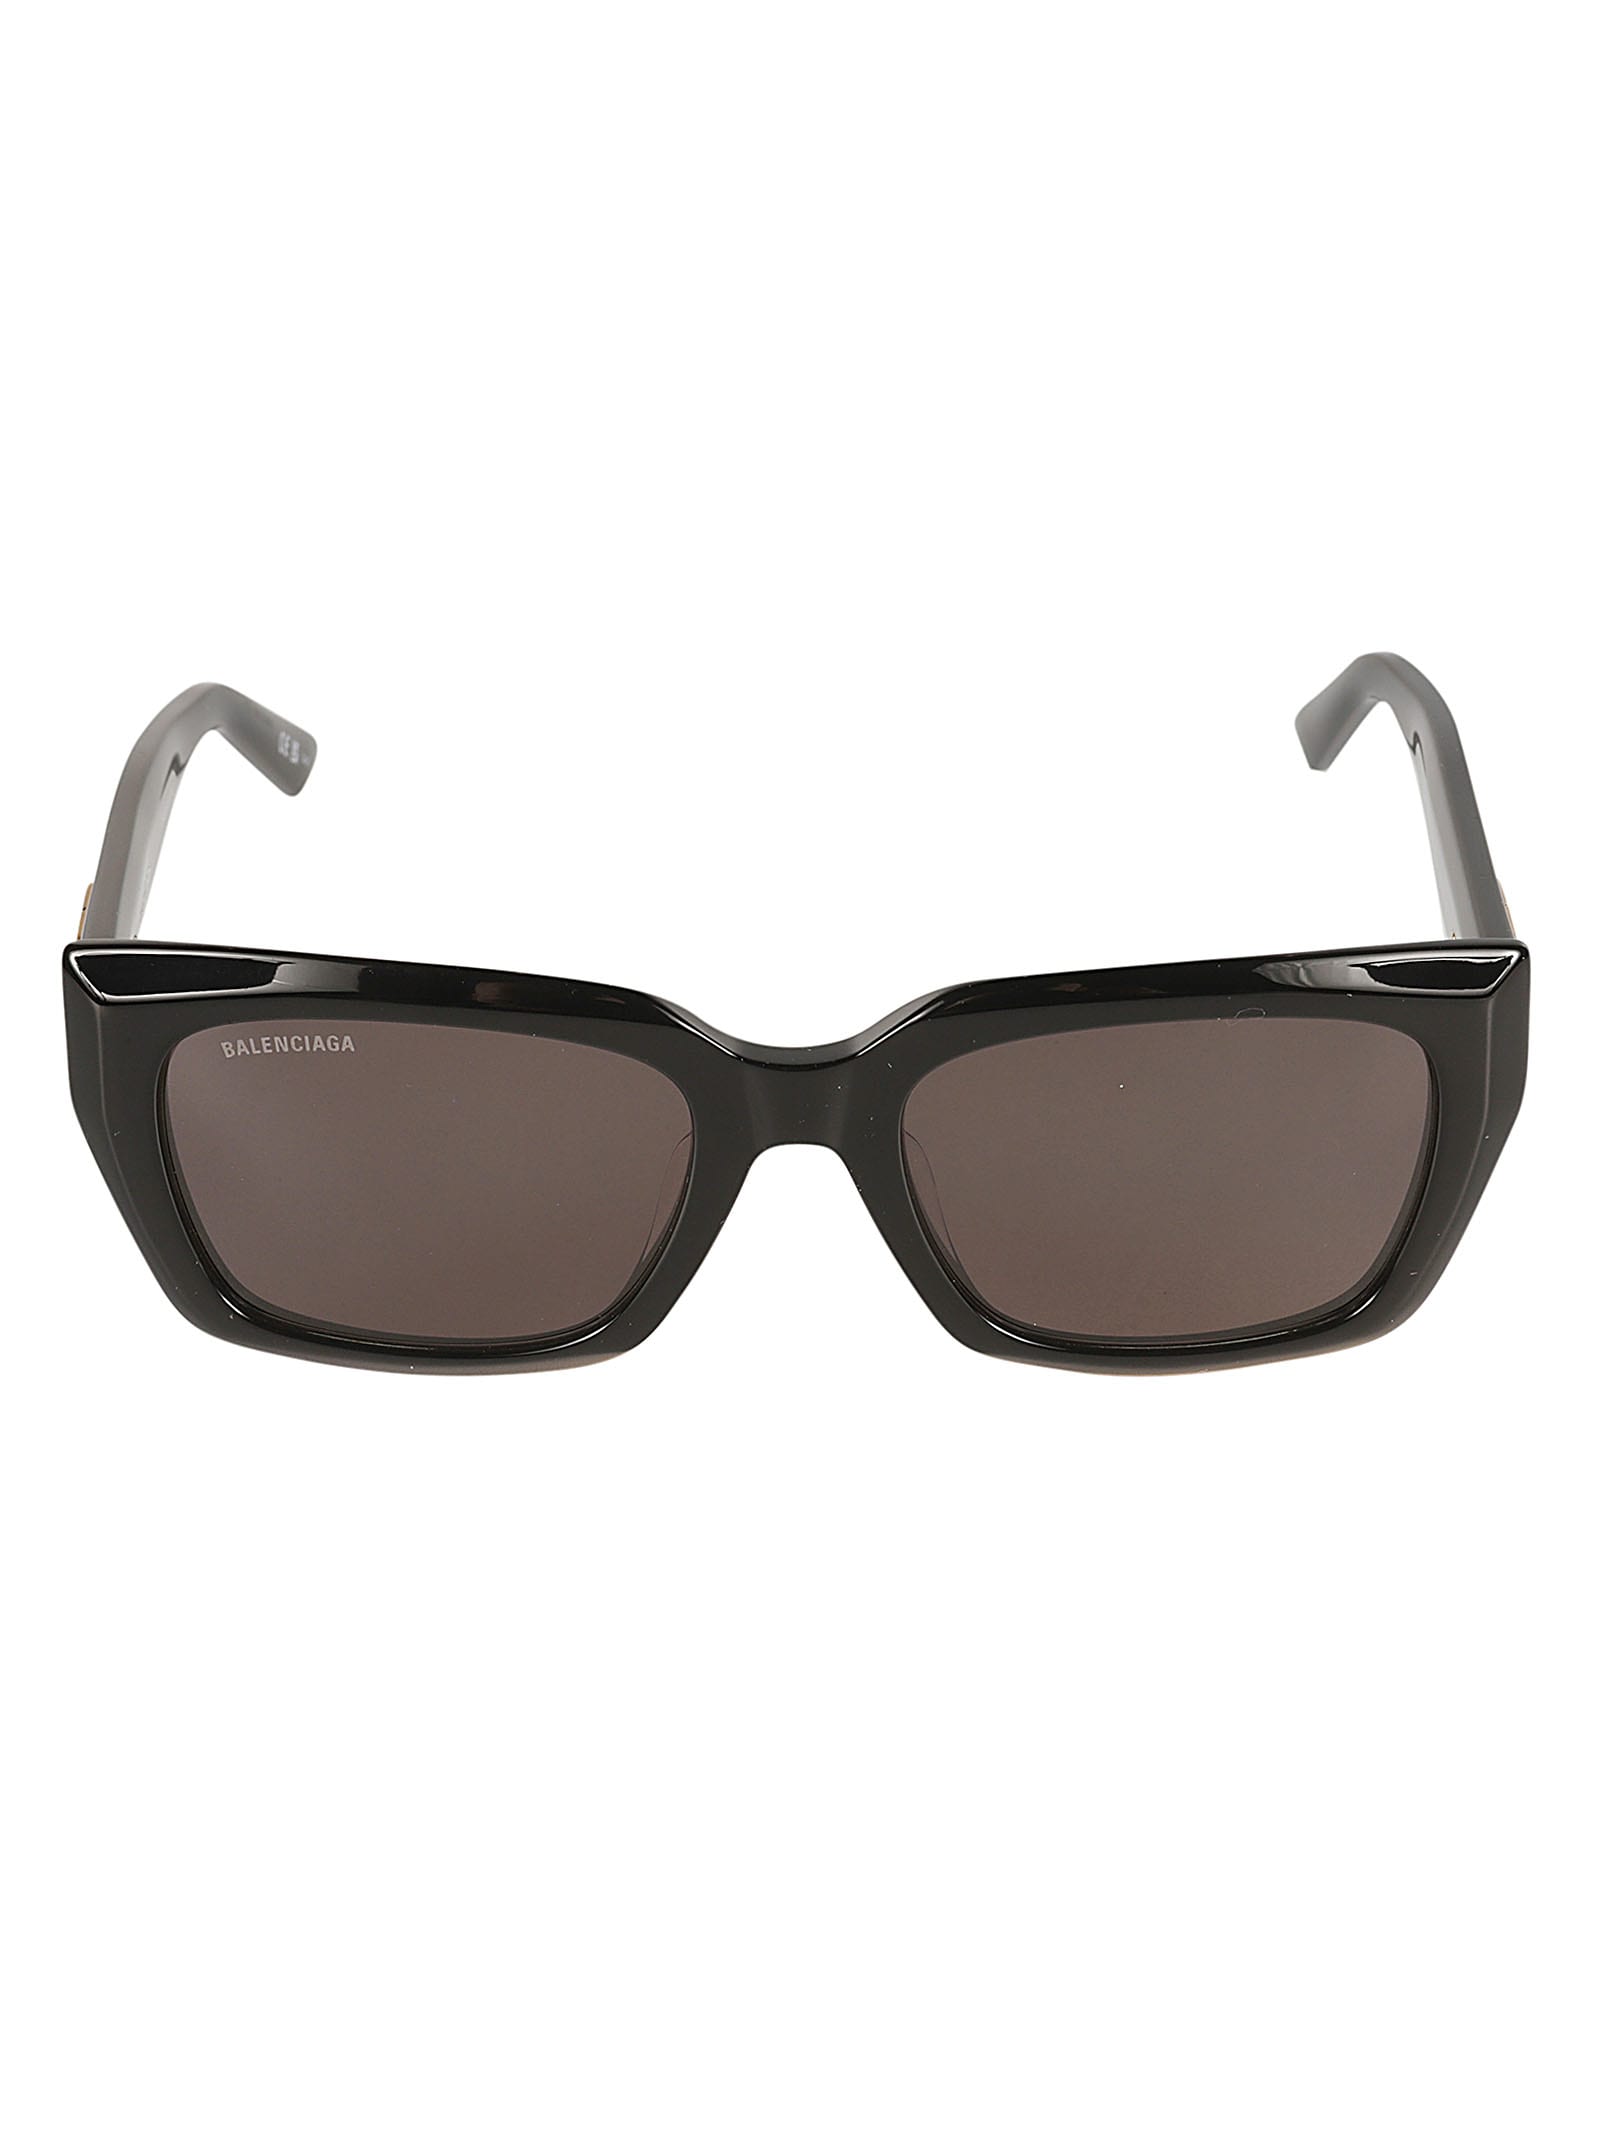 Balenciaga Bb Plaque Square Frame Sunglasses In Black/grey